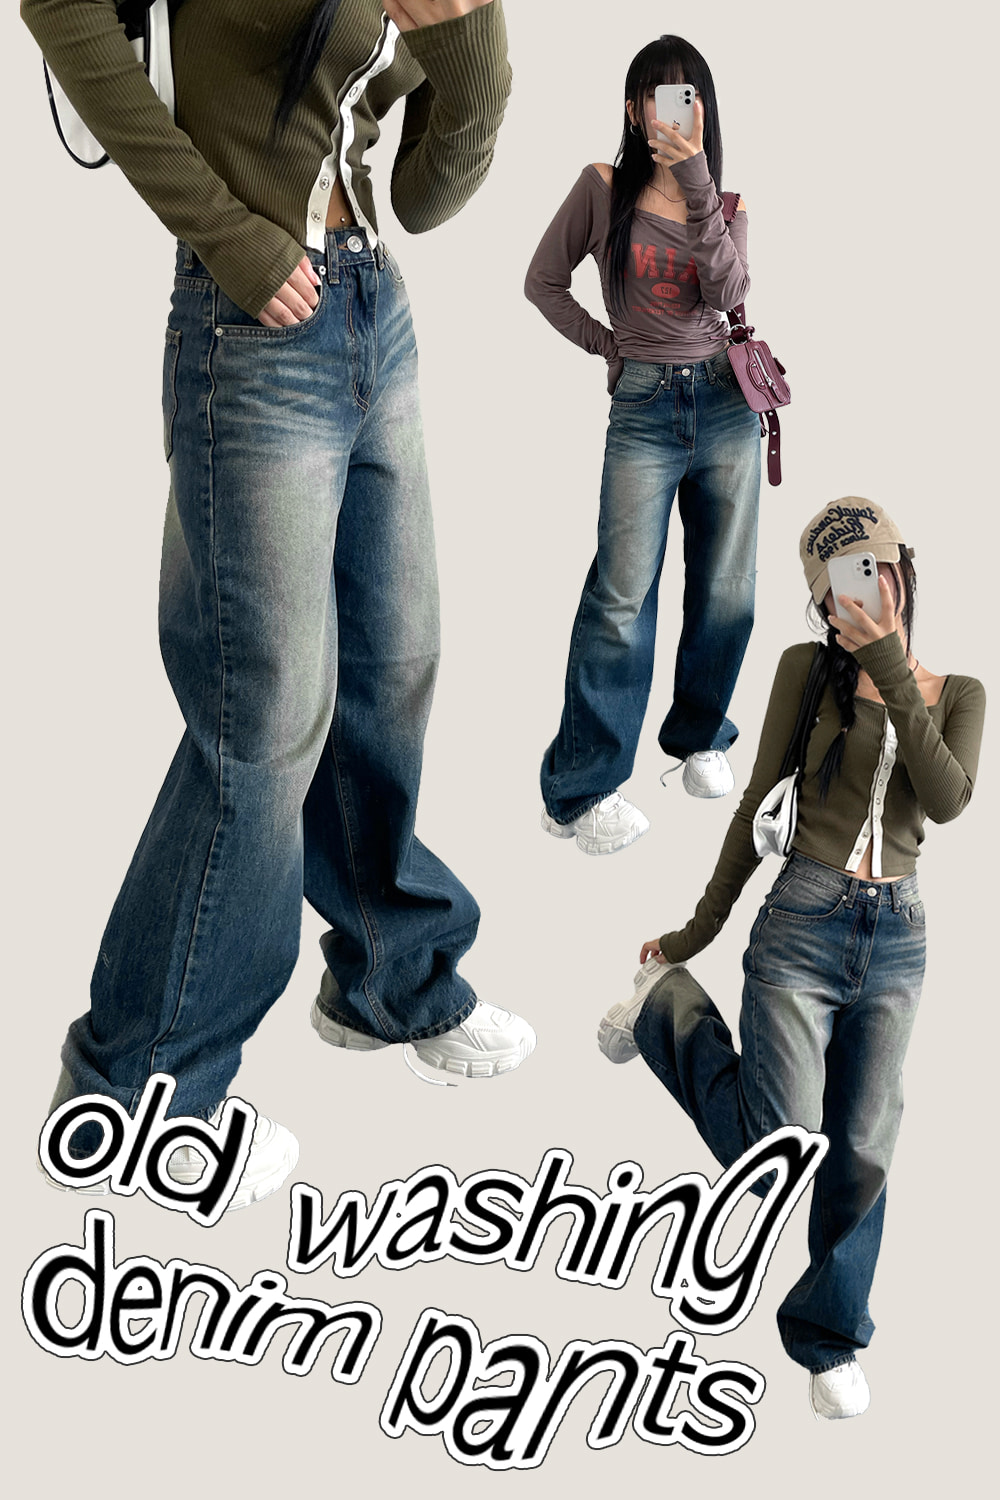 old washing denim pants